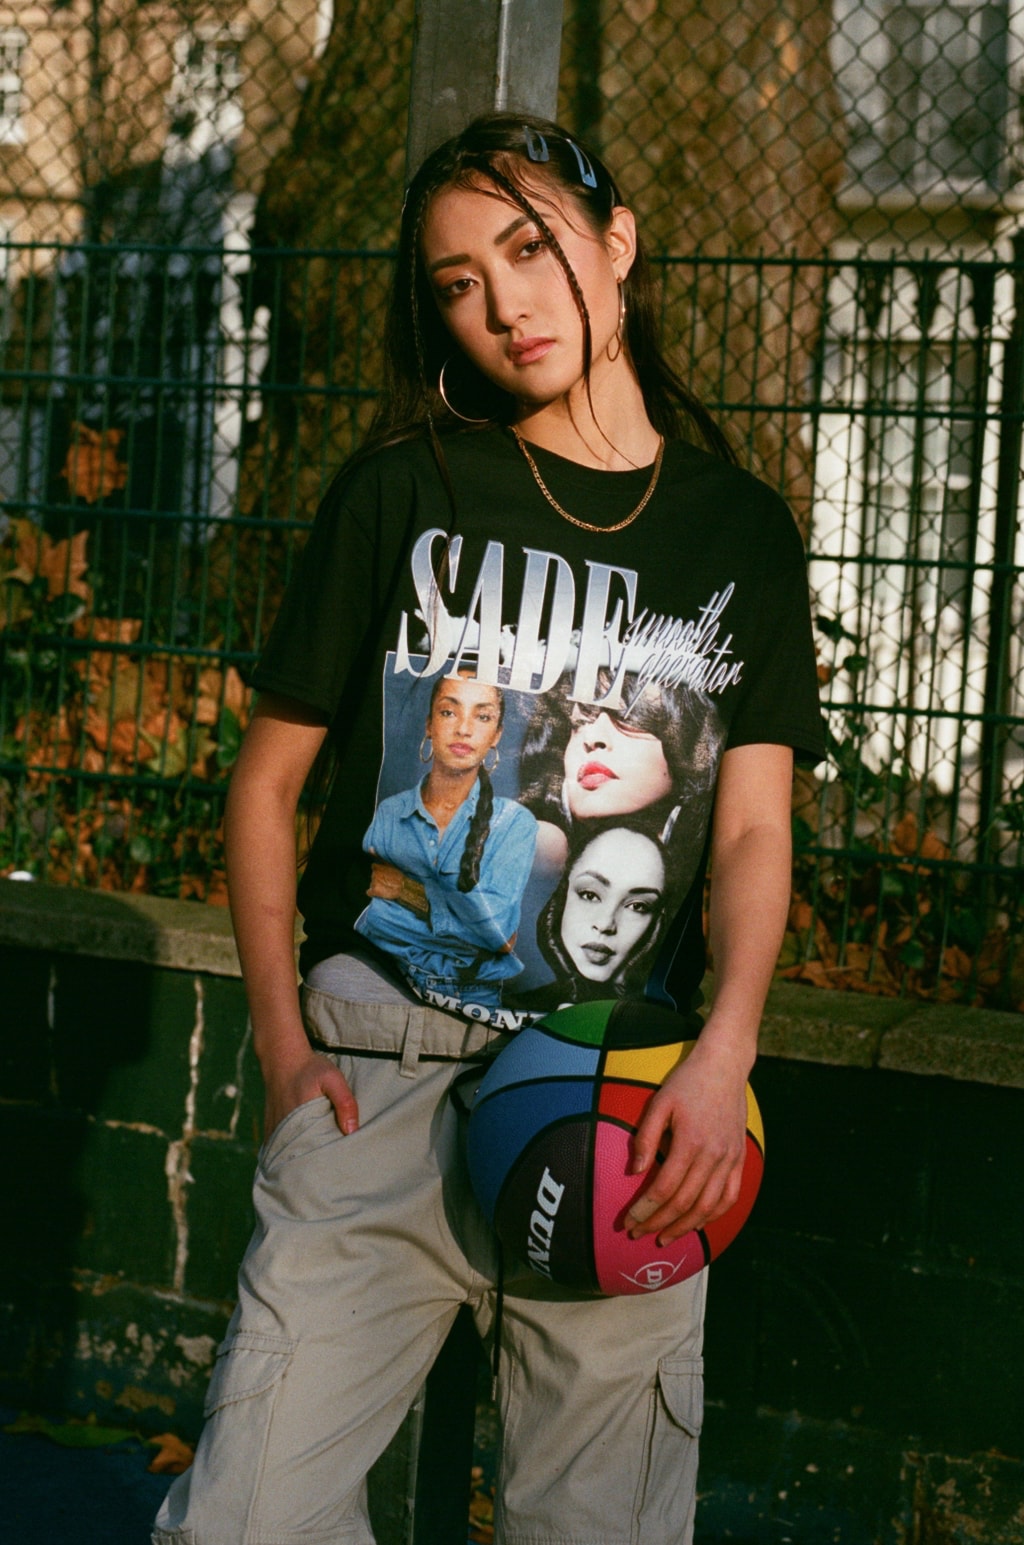 Editorial womens fashion 2018 NYC Brooklyn retro 90s reebok nike air max 95 sade T-shirt